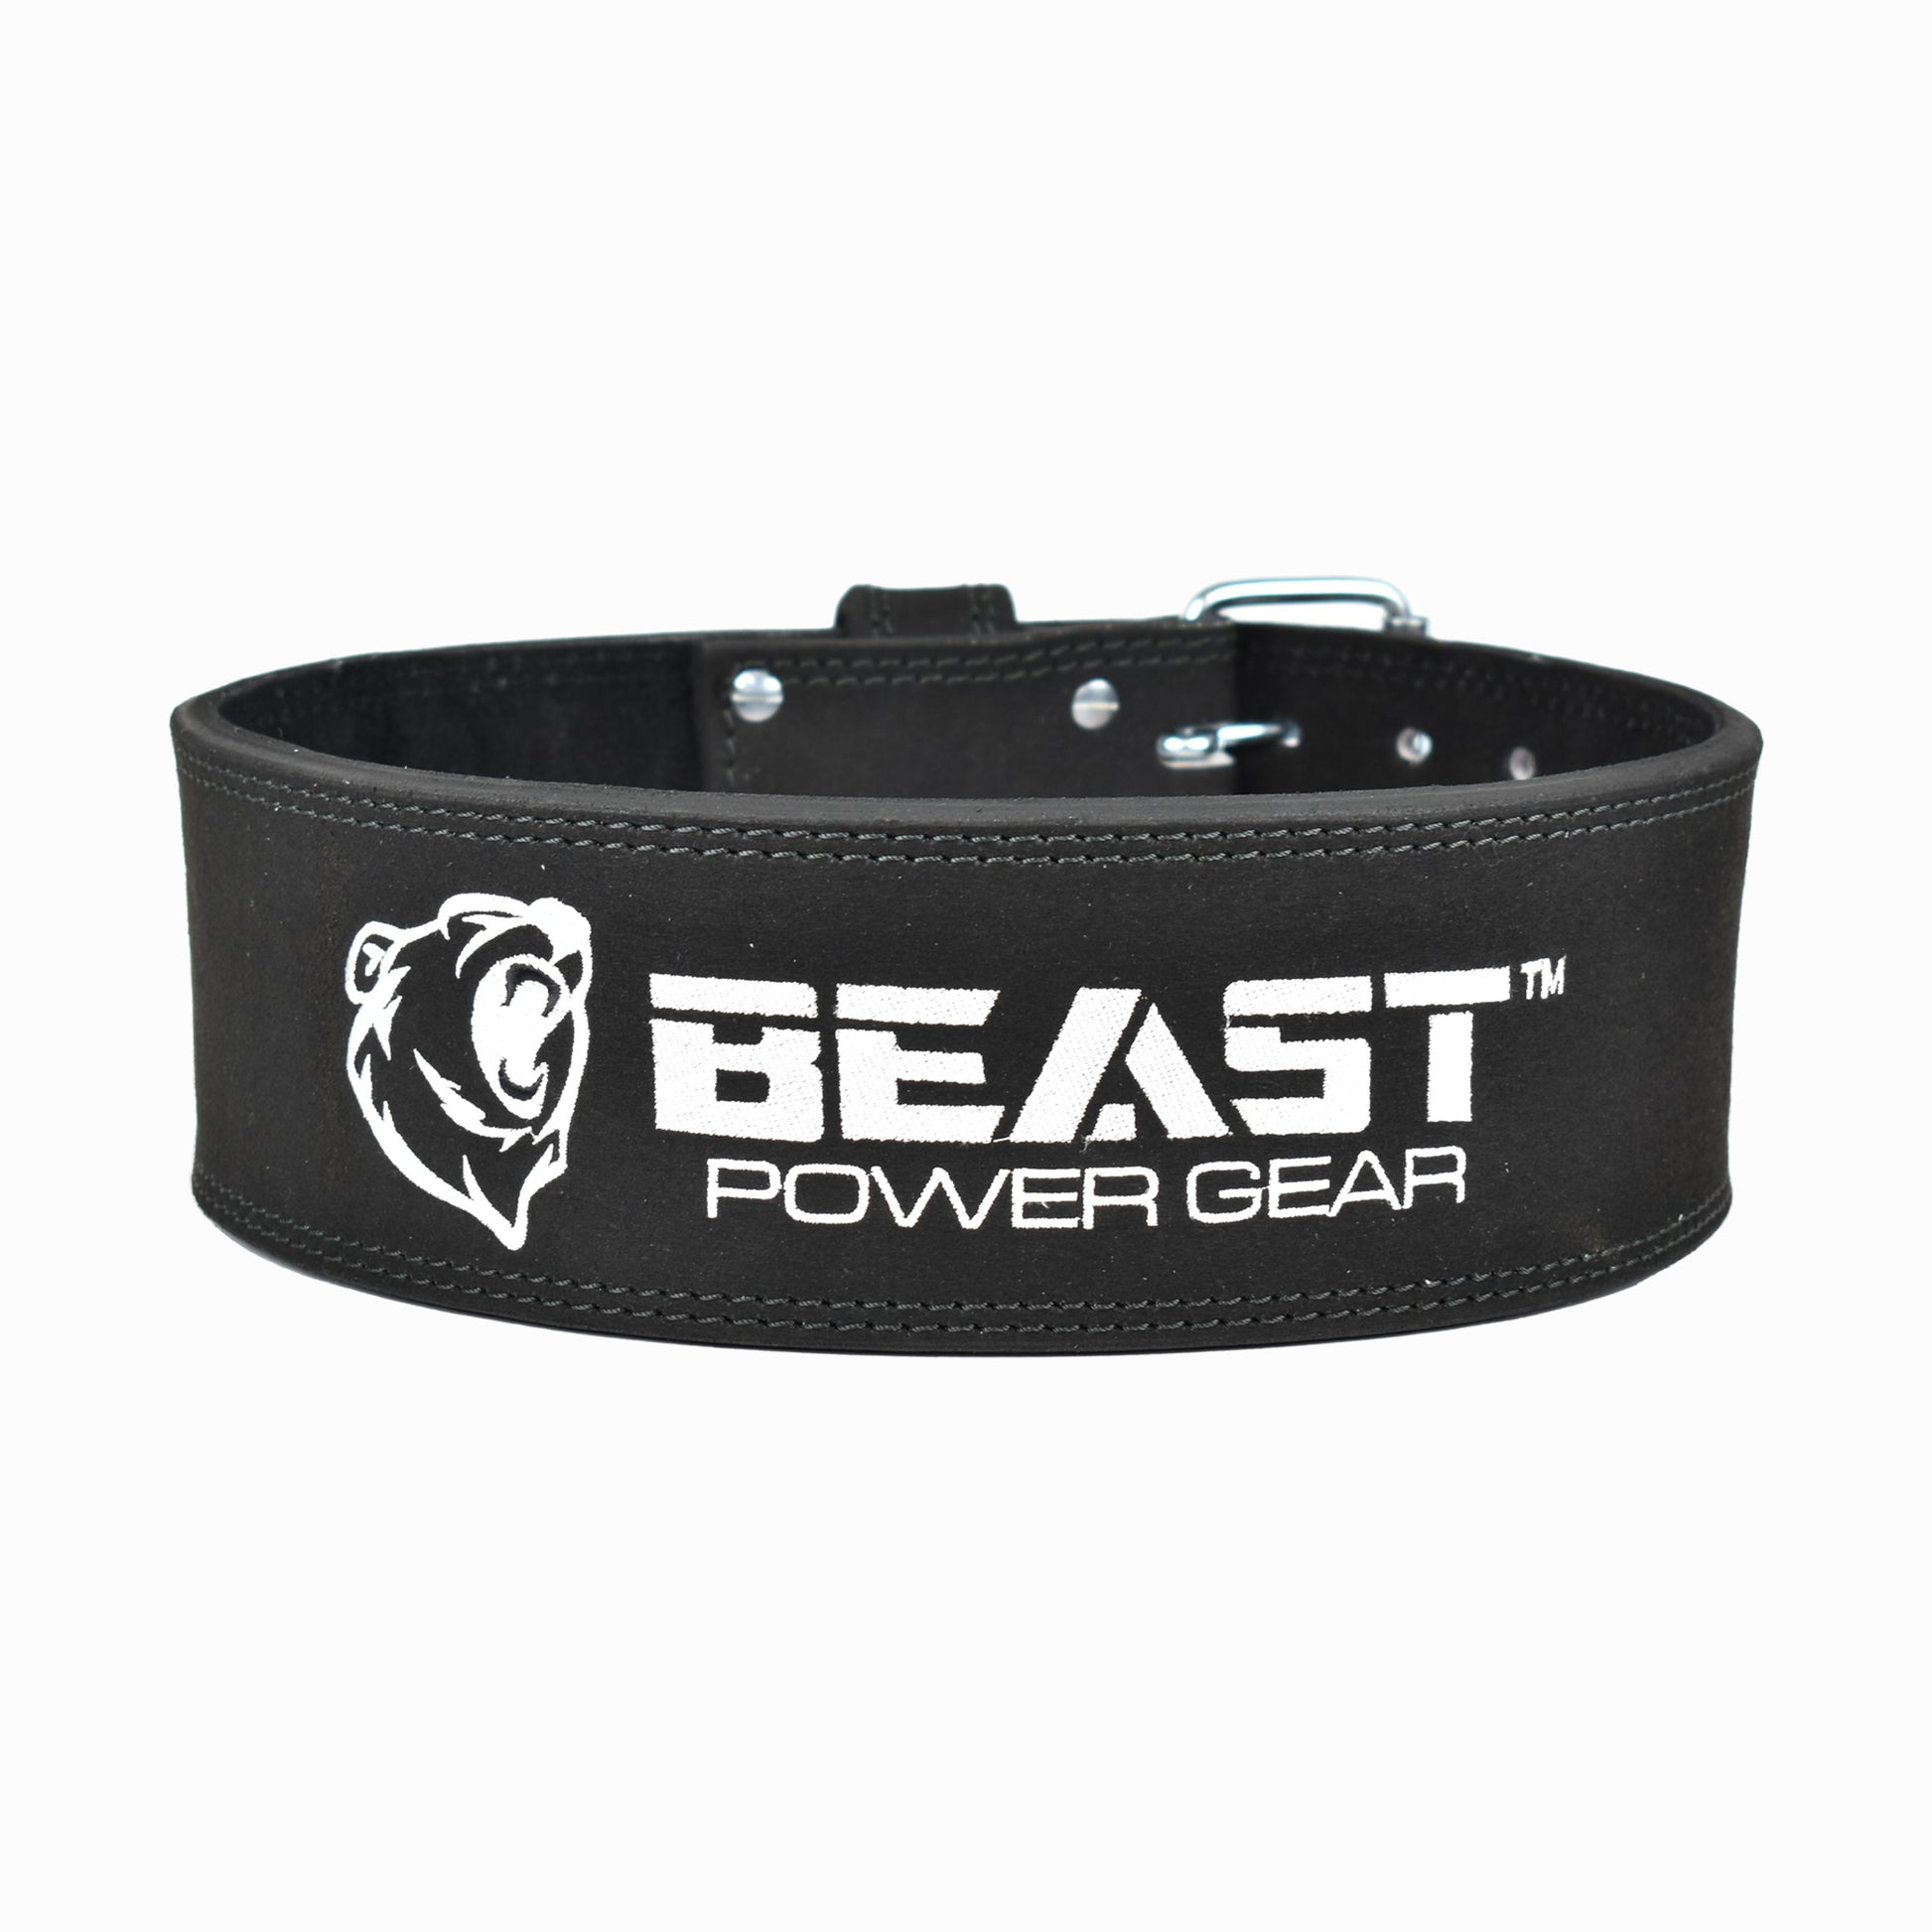 Beast Gear PowerBelt - Premium Double Prong Powerlifting Belt 4 x